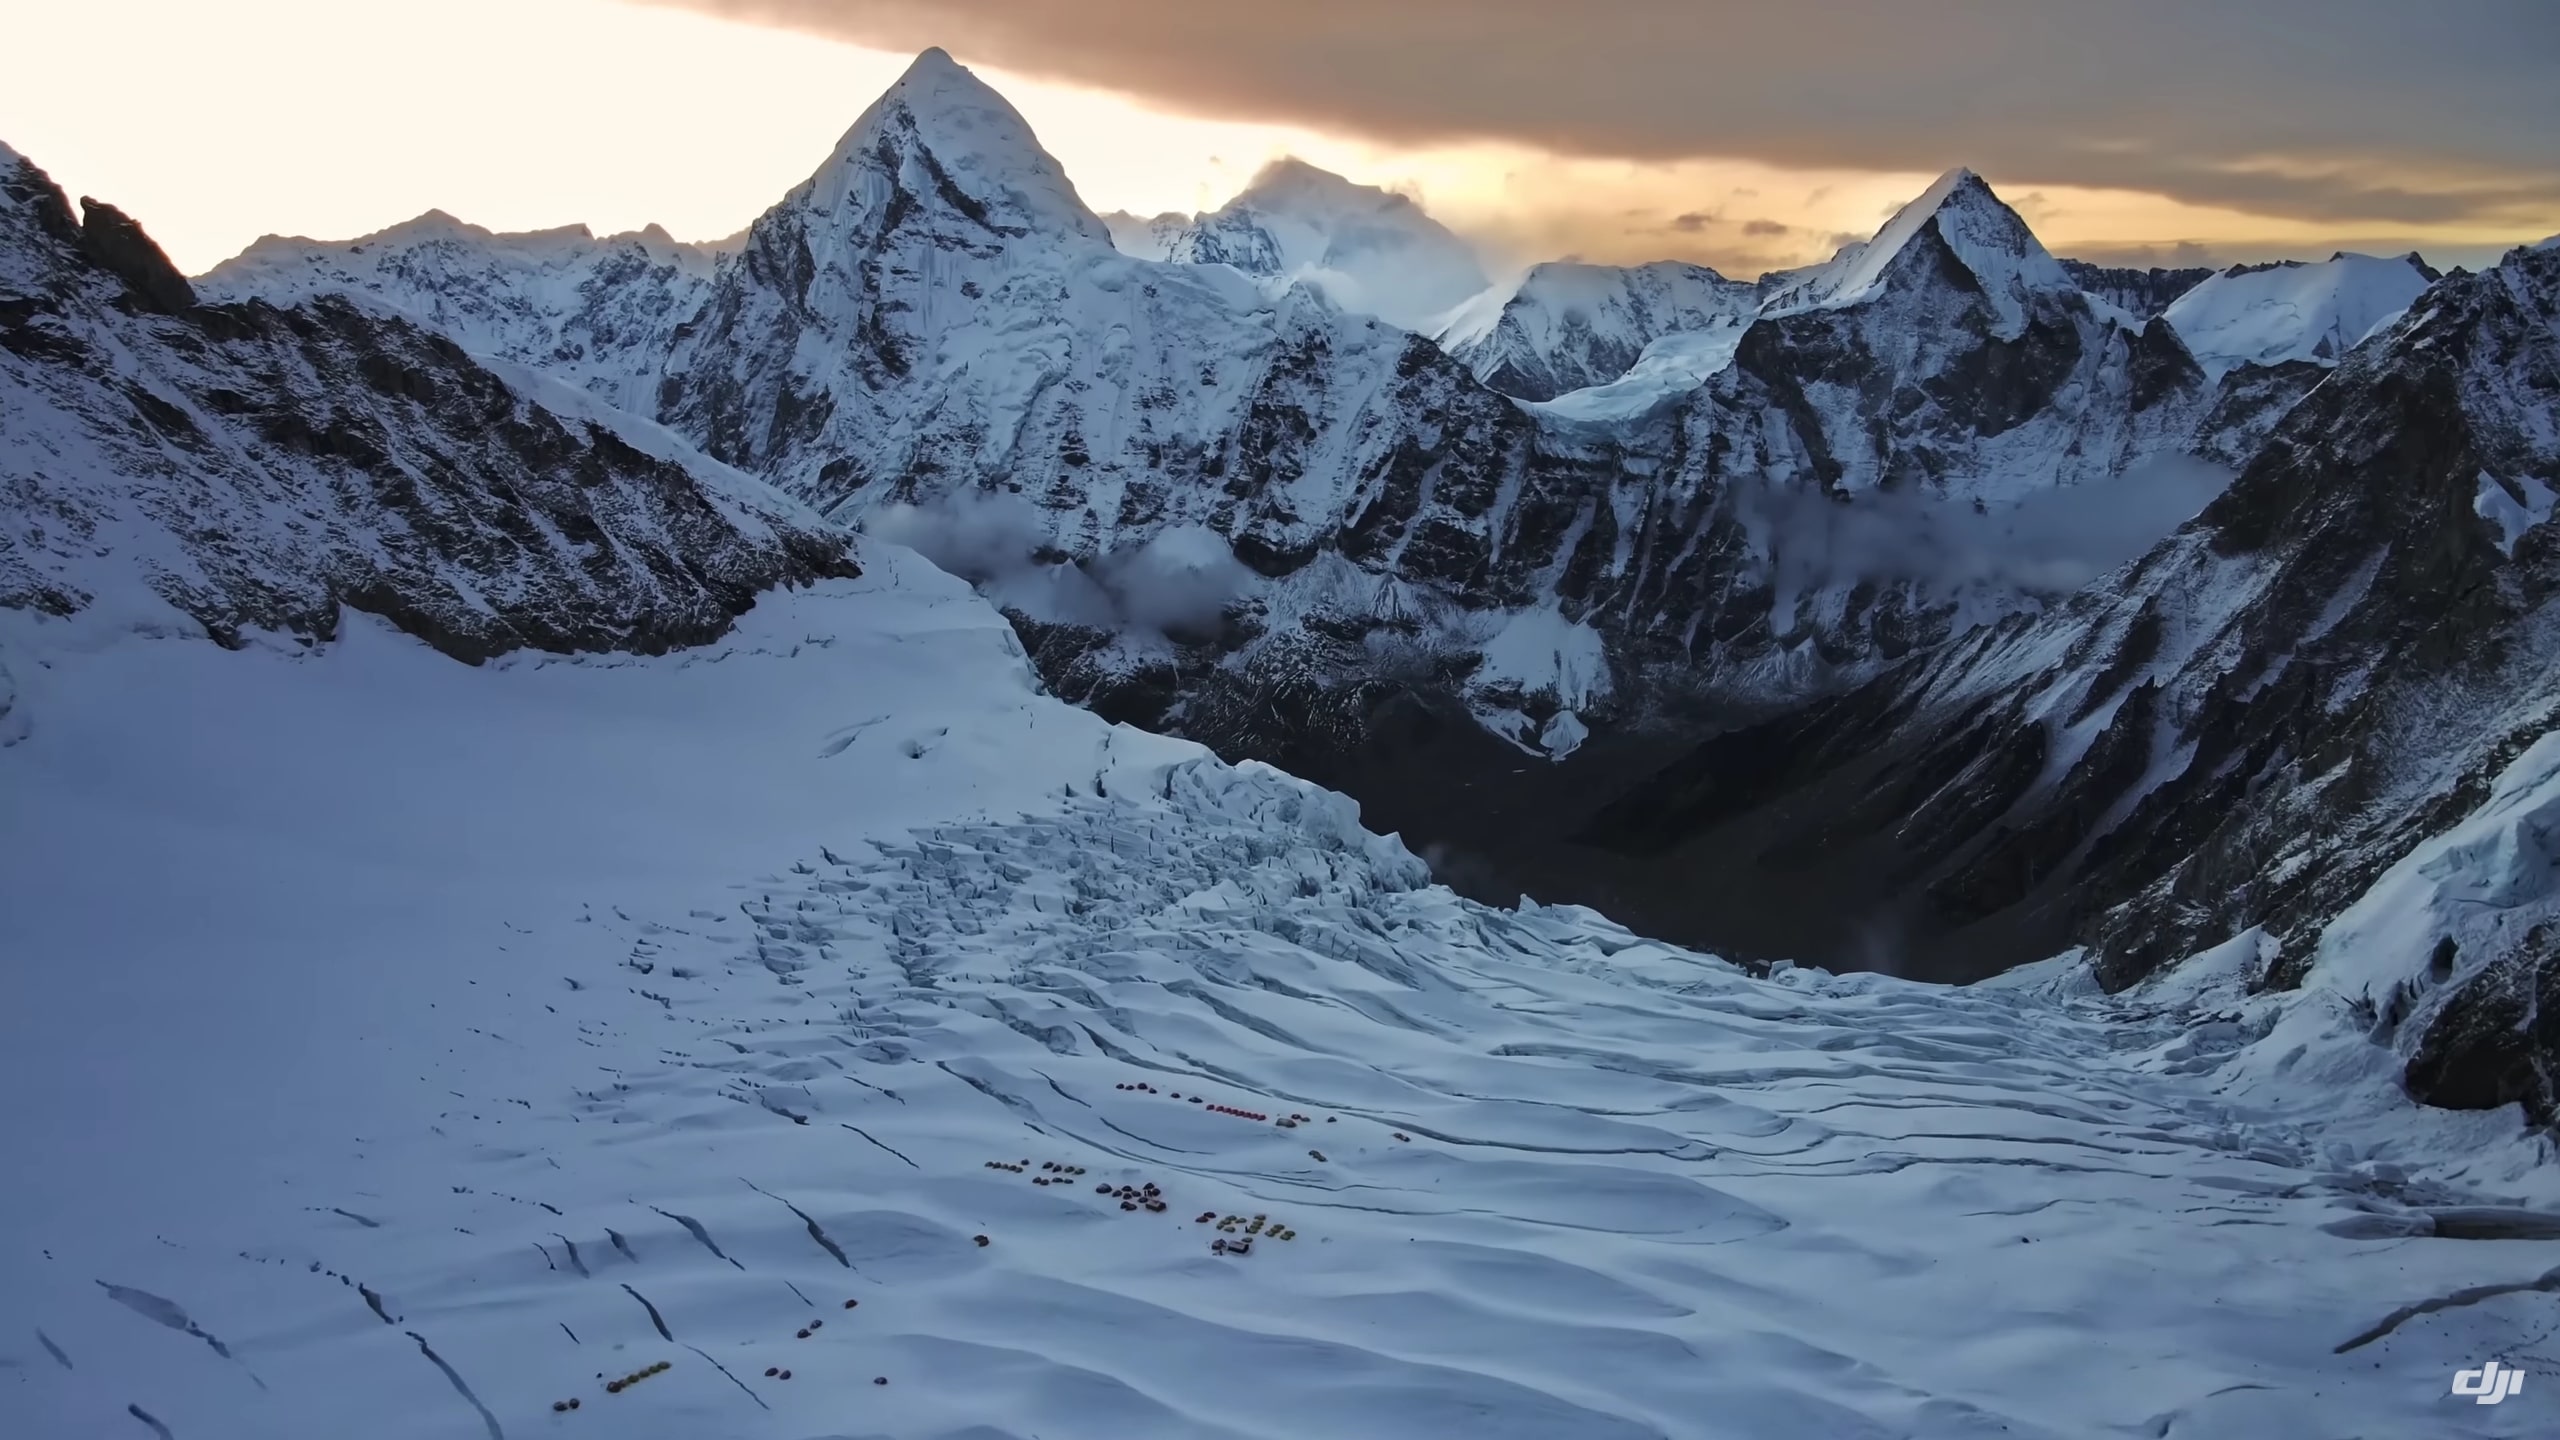 Cùng xem video DJI Mavic 3 bay lượn trên nóc nhà thế giới - Đỉnh núi Everest